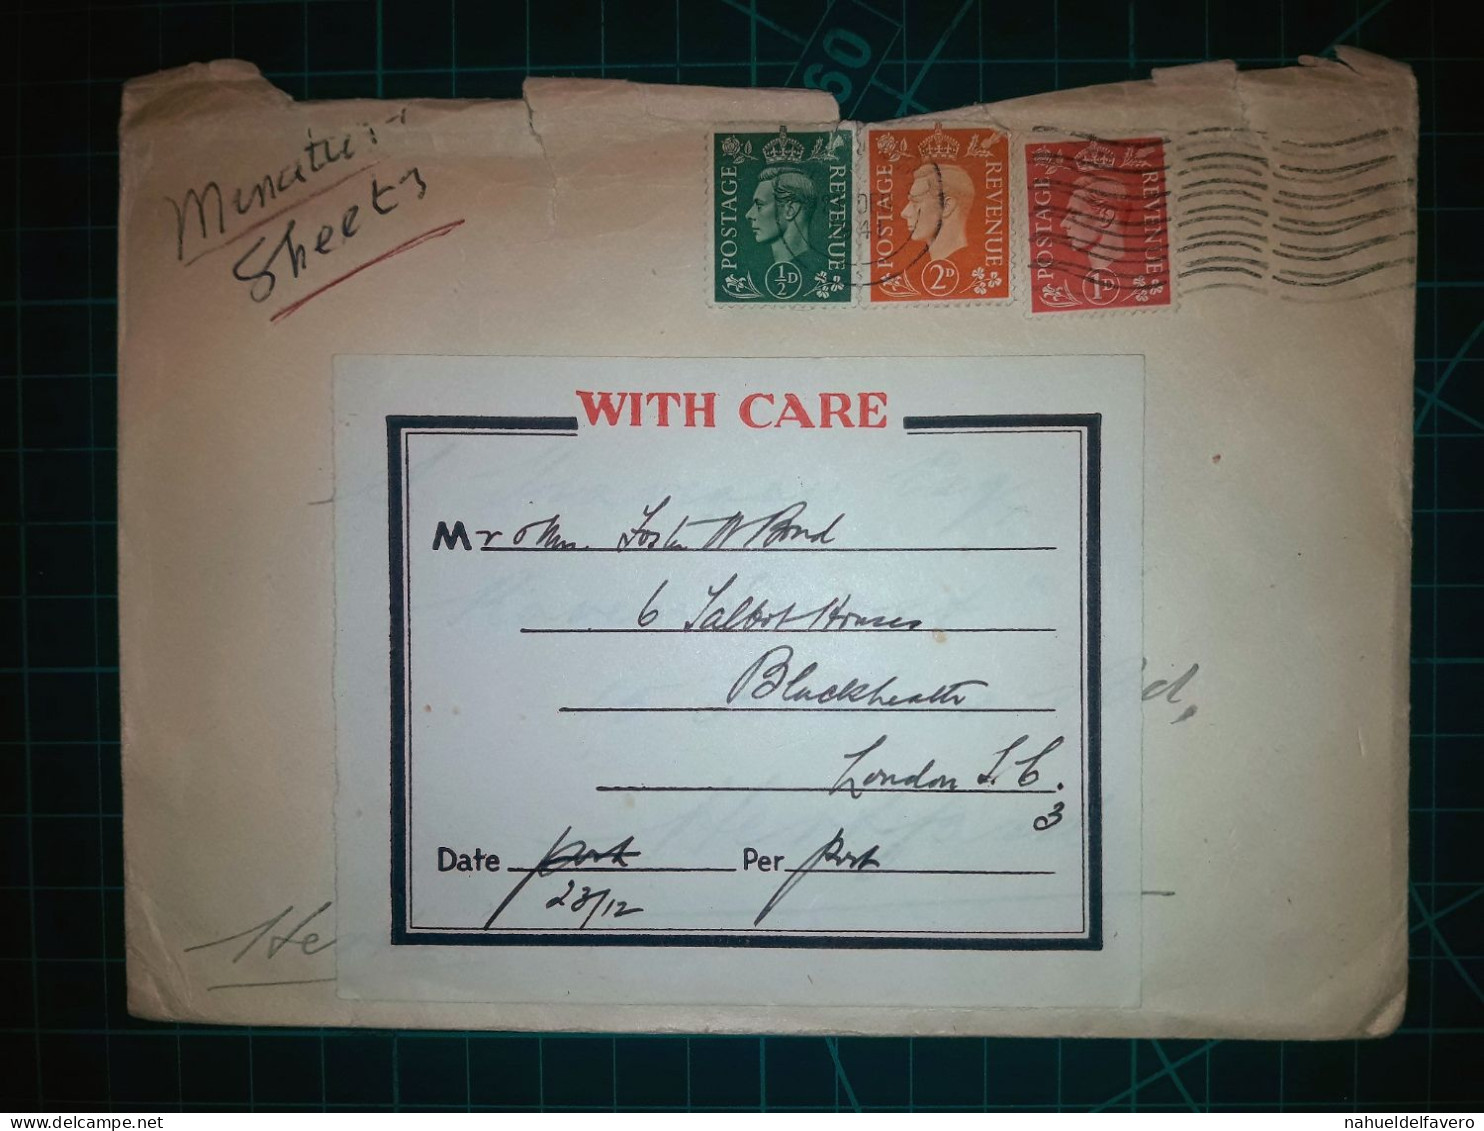 ANGLETERRE, Enveloppe A Circulé à Londres Avec Une Variété Colorée De Timbres-poste. Années 1940 - Used Stamps